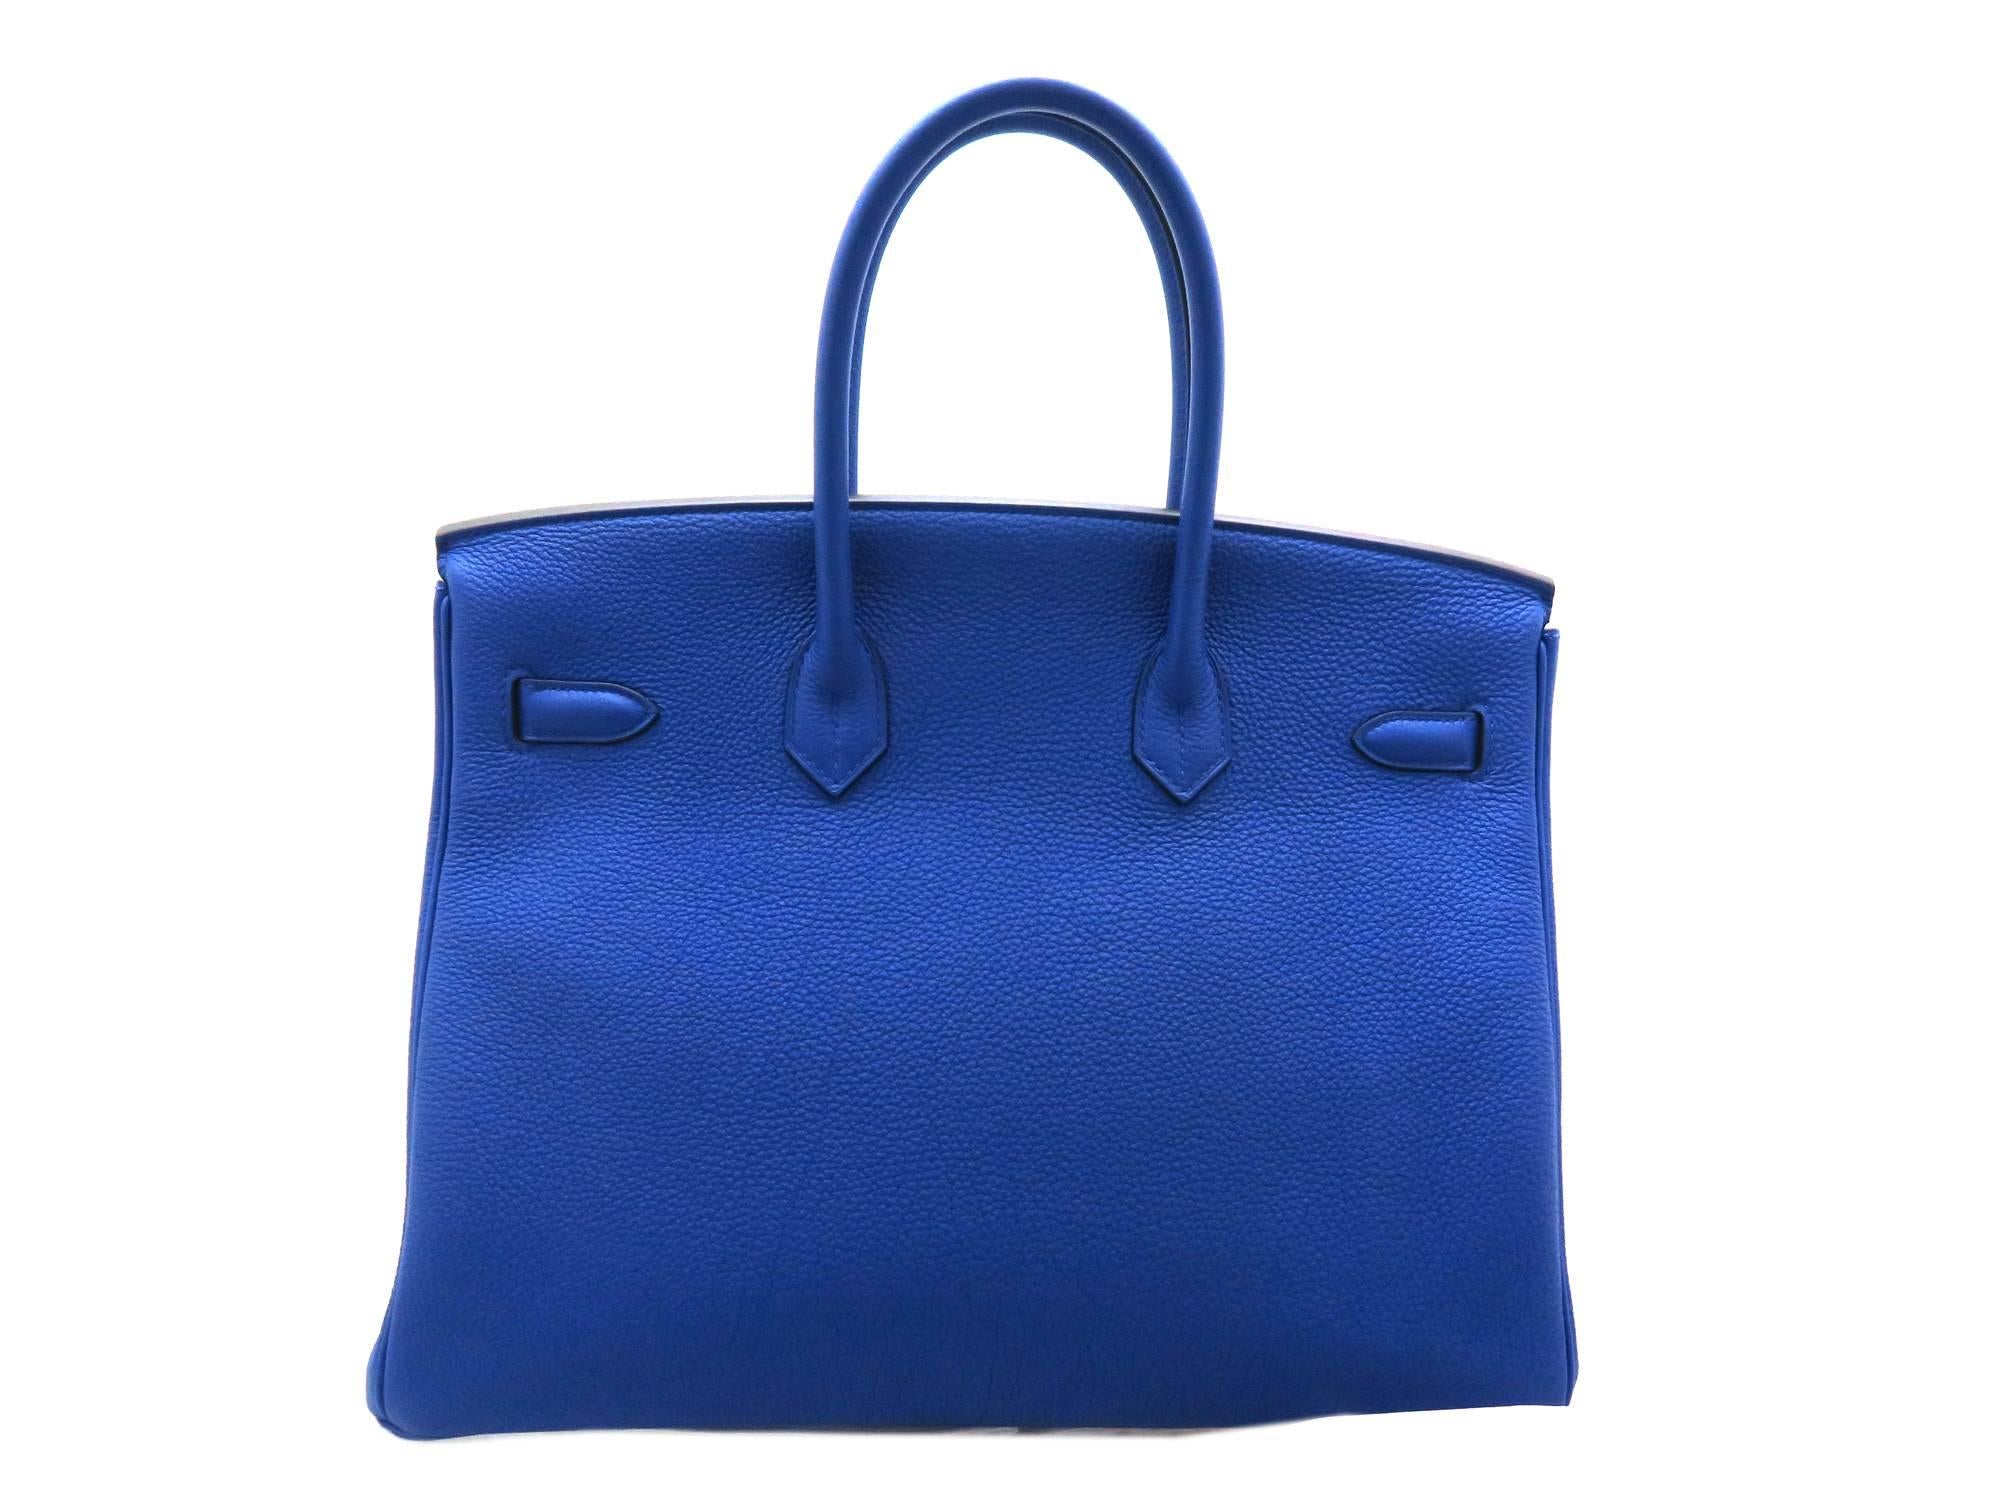 Blue Hermes Birkin 35 Bleu Electric Togo Leather SHW Top Handle Bag